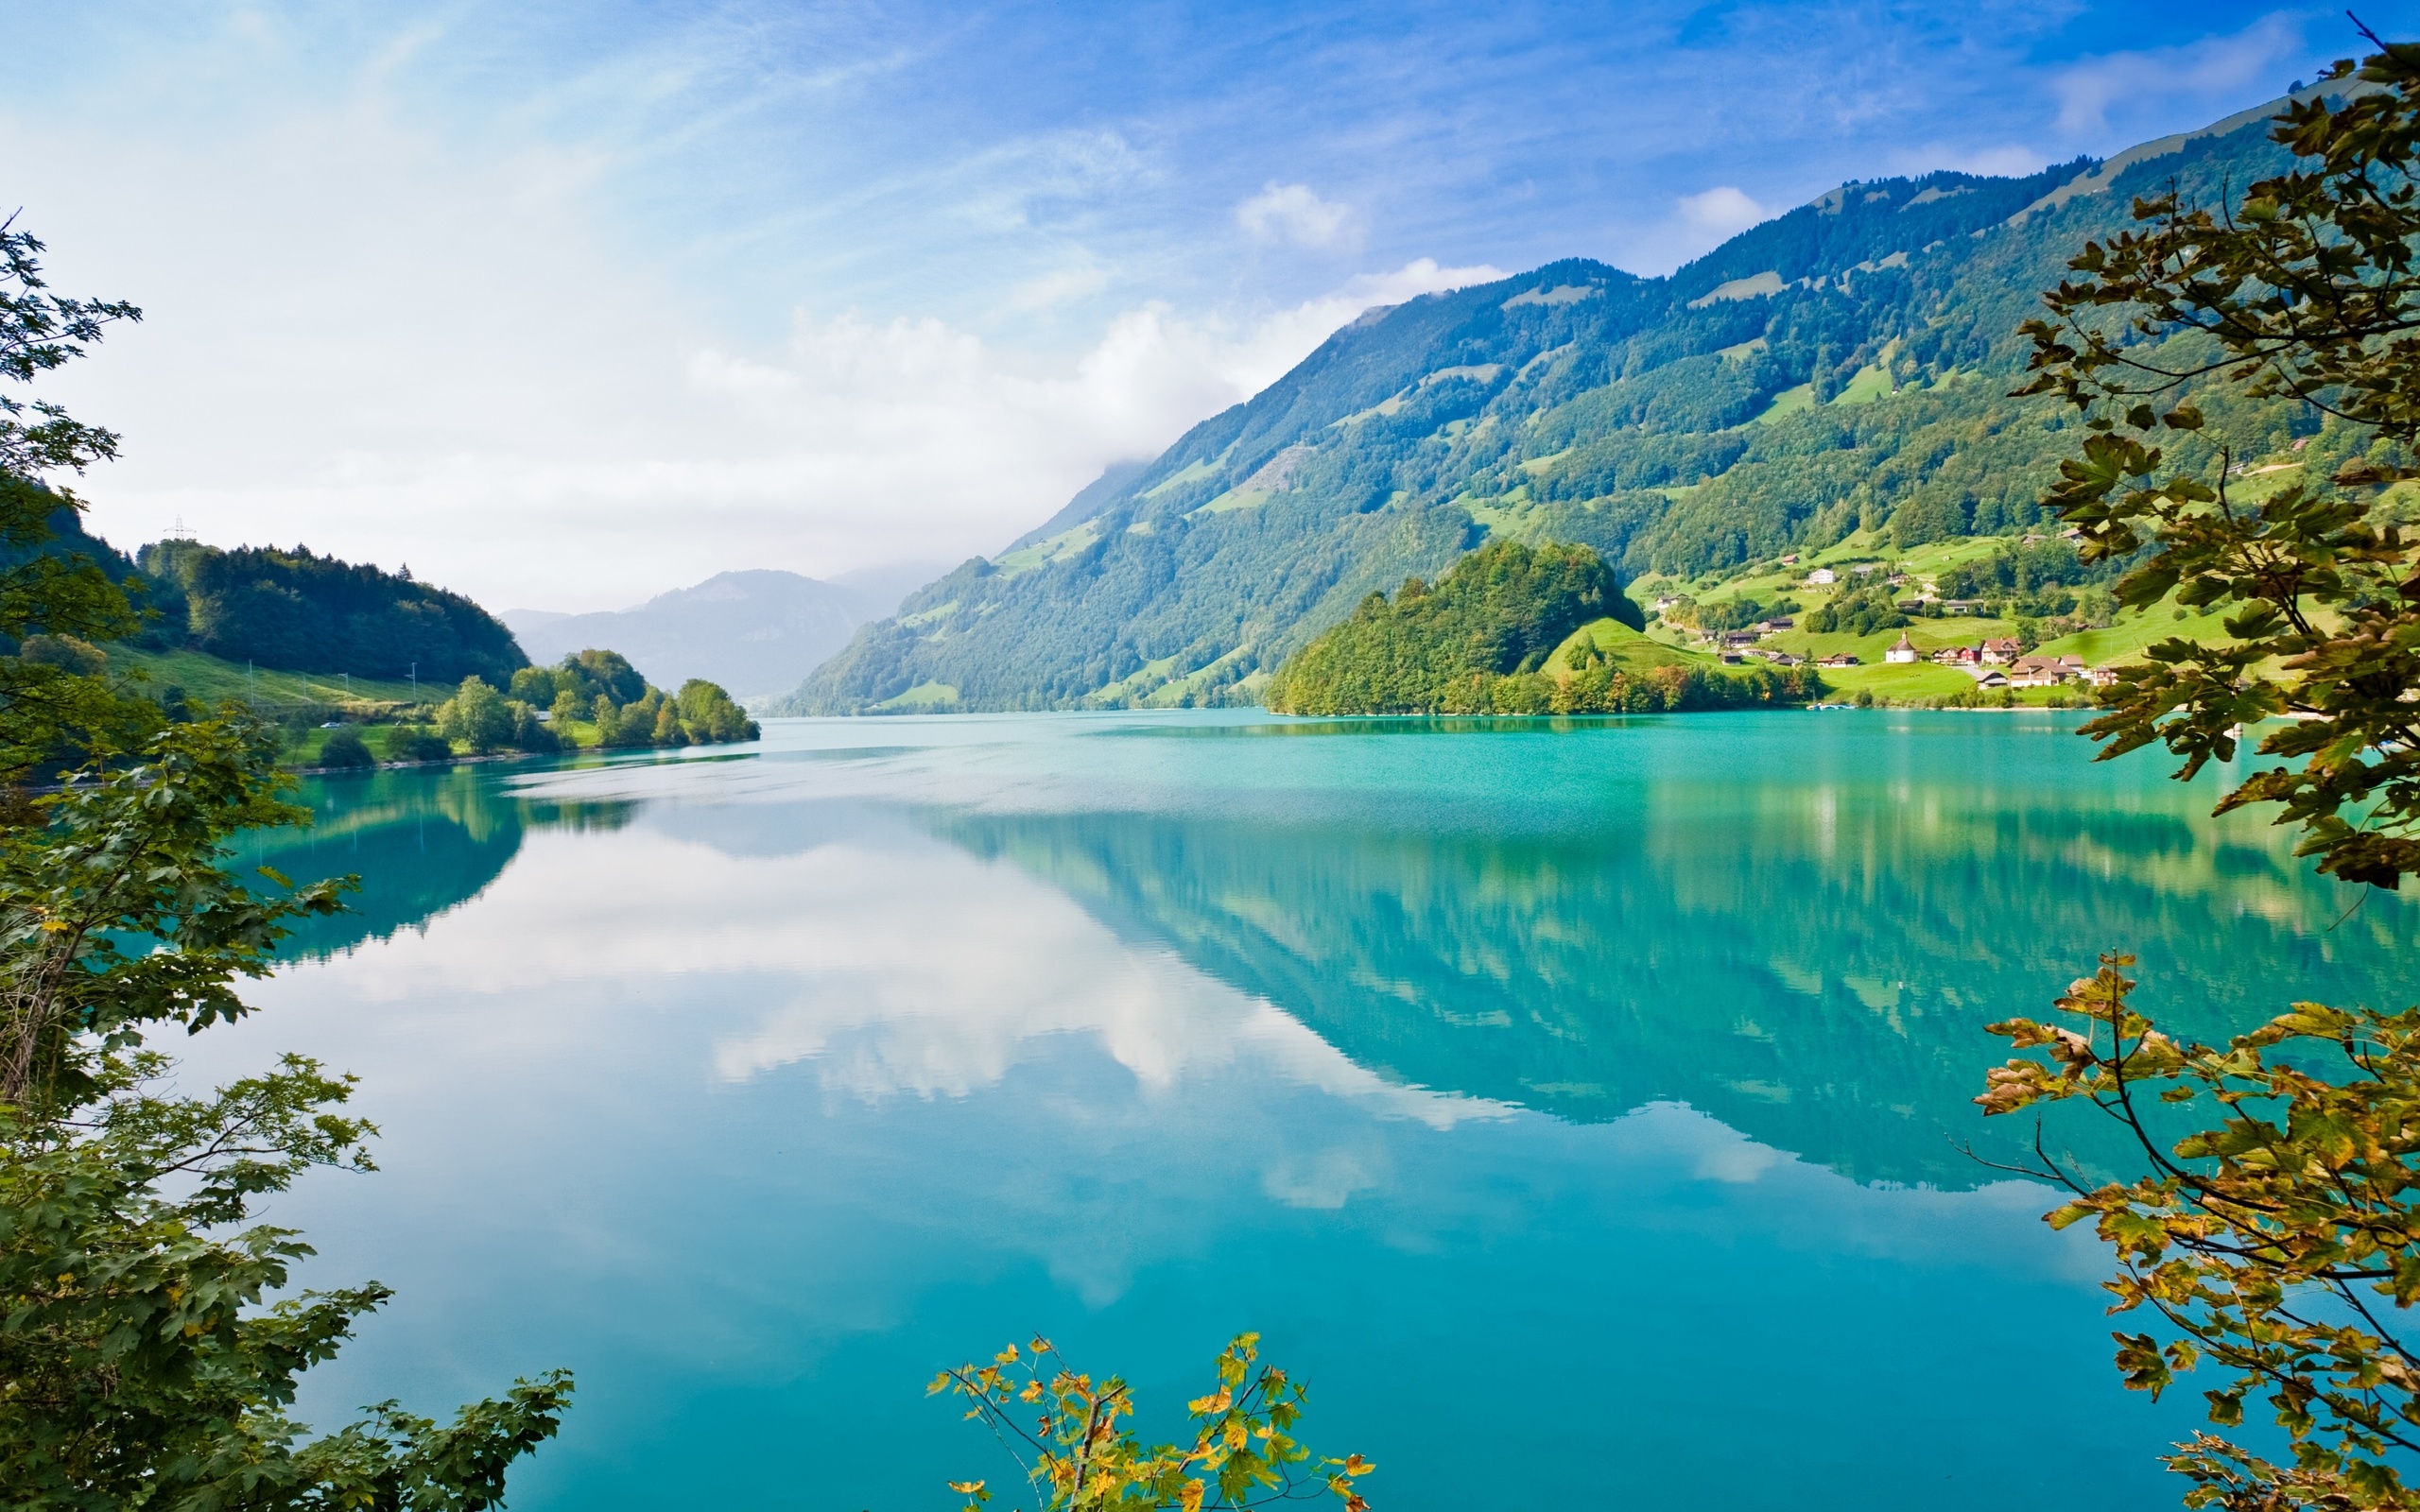 Những bức ảnh về hồ đẹp sẽ khiến bạn thích thú với màu nước xanh thẳm lấp lánh dưới ánh nắng. Quang cảnh sống động và hòa quyện với thiên nhiên sẽ thôi thúc bạn muốn tìm đến những địa điểm đó. 